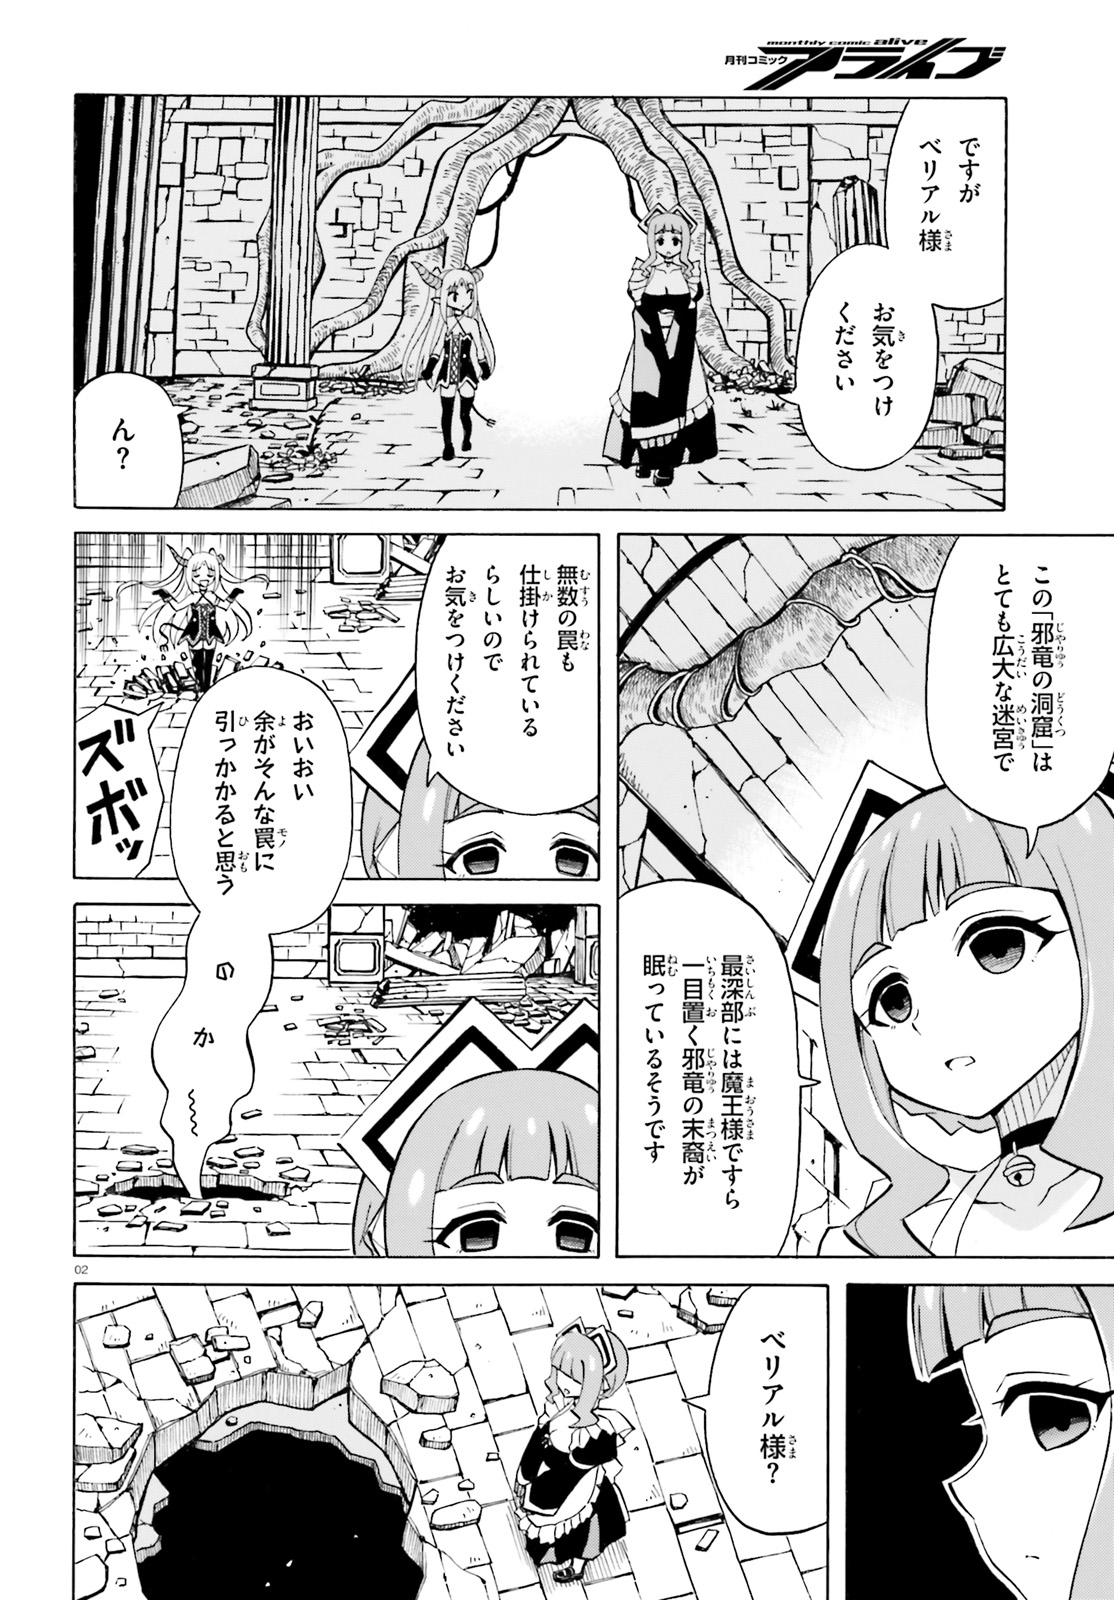 Beriaru-sama wa Shitenno no Naka Demo × × - Chapter 5 - Page 2